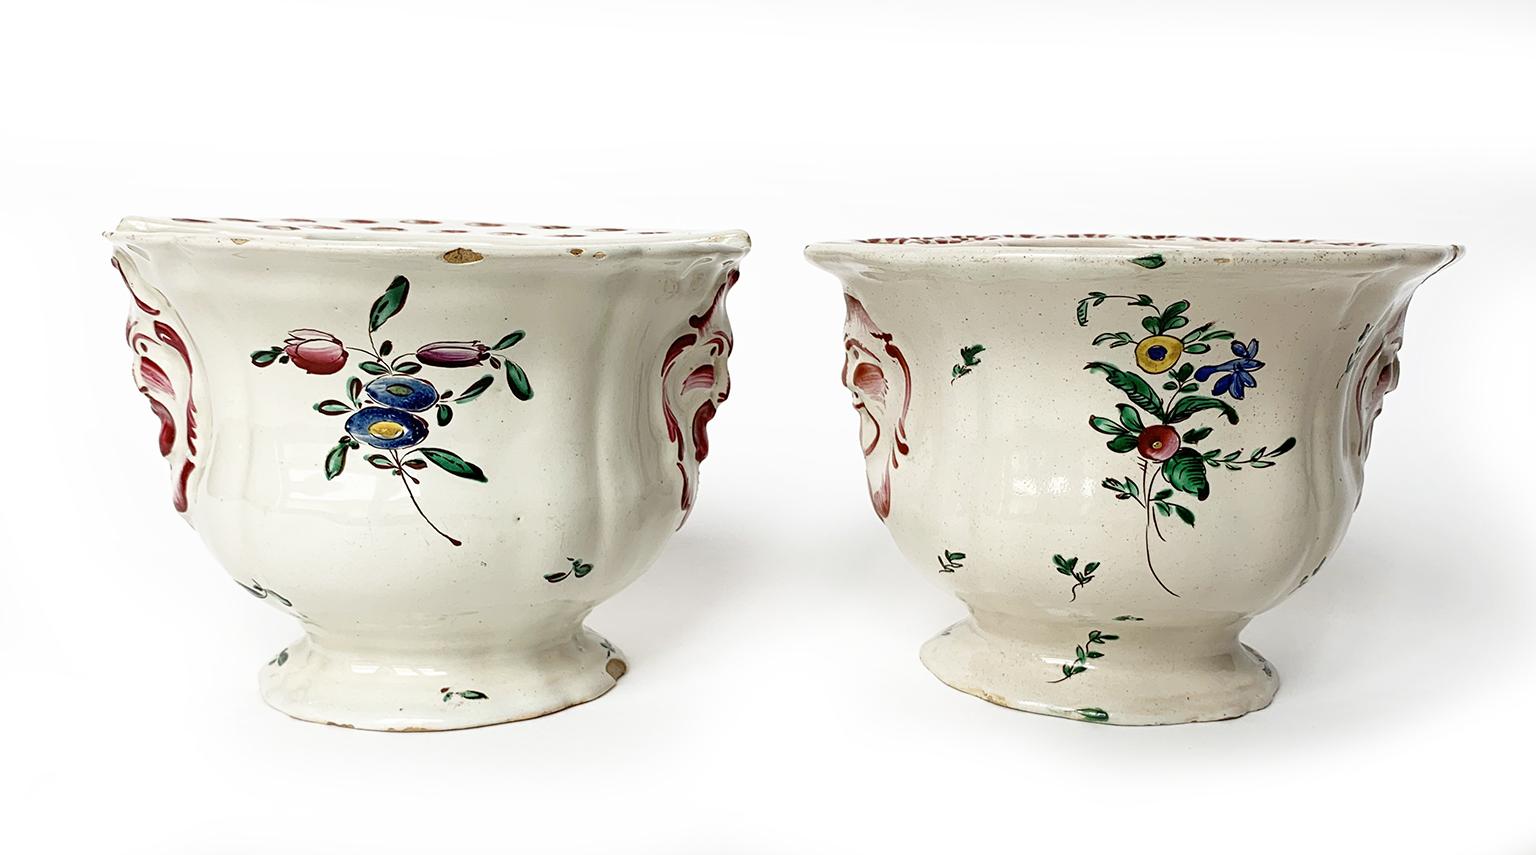 Rococo Pair of Italian Maiolica Flower Pots, Antonio Ferretti, Lodi, circa 1770 – 1780